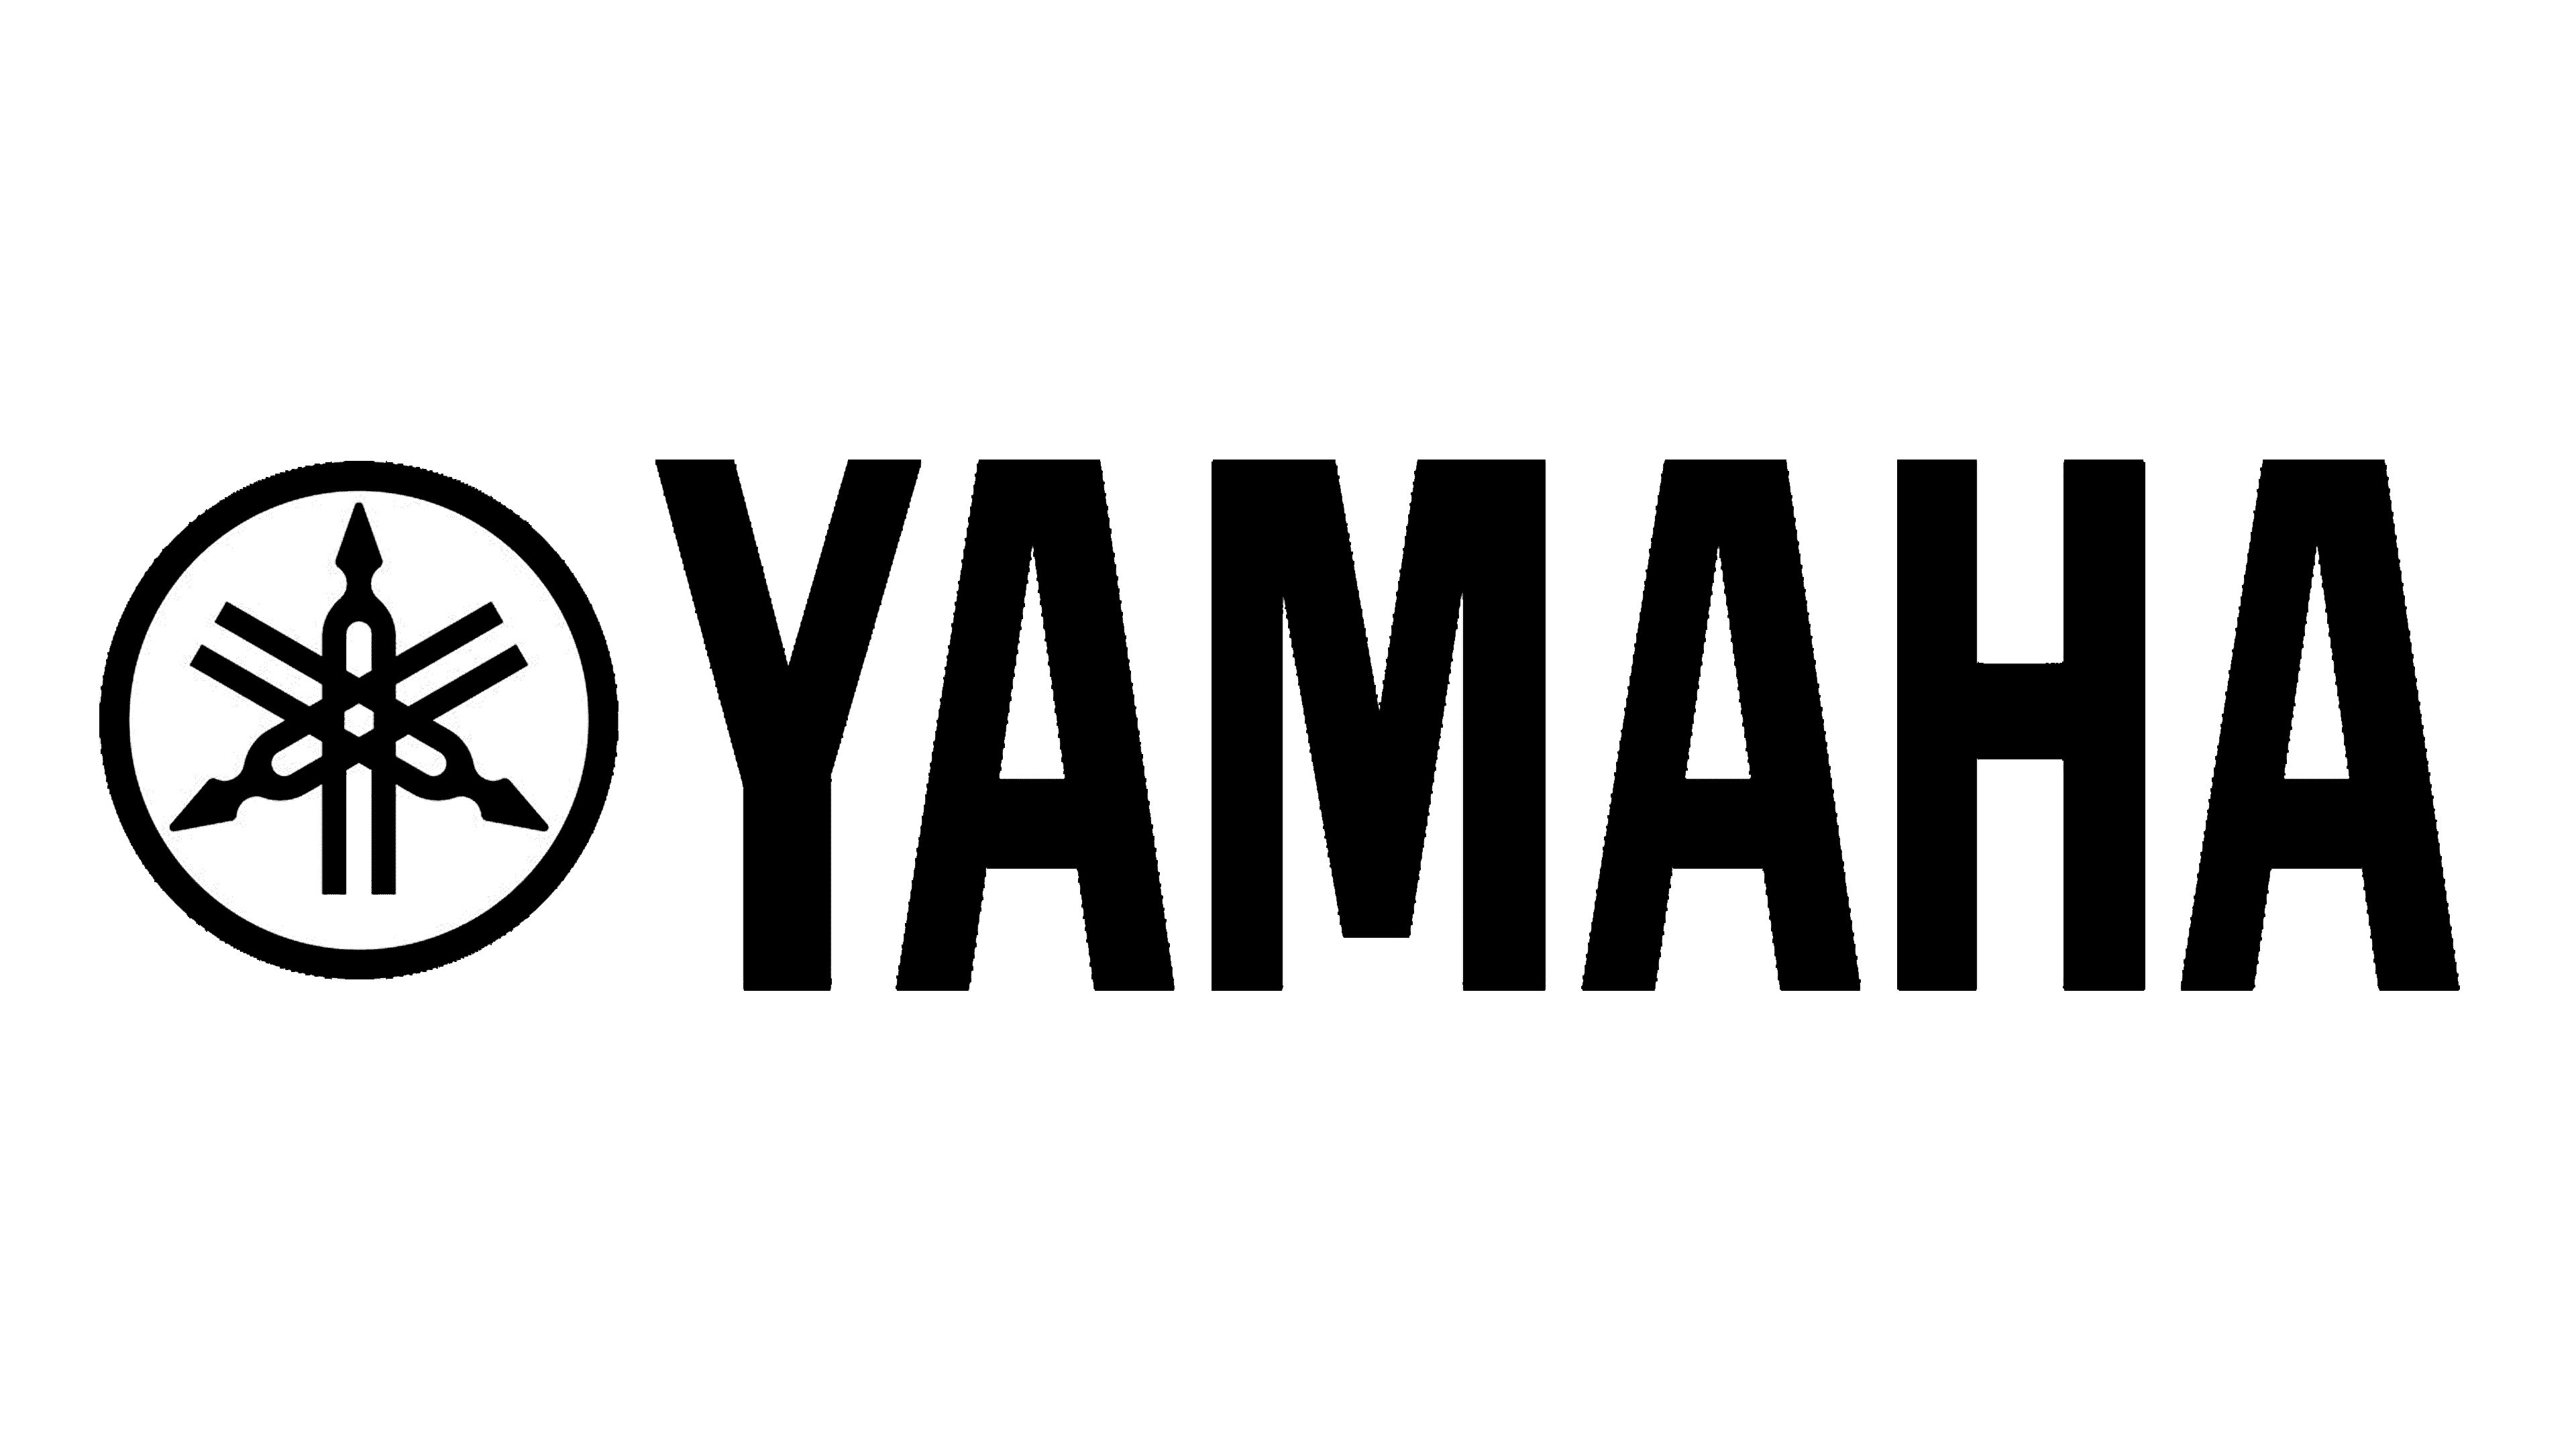 13 Best Yamaha logo ideas | yamaha logo, yamaha, ? logo